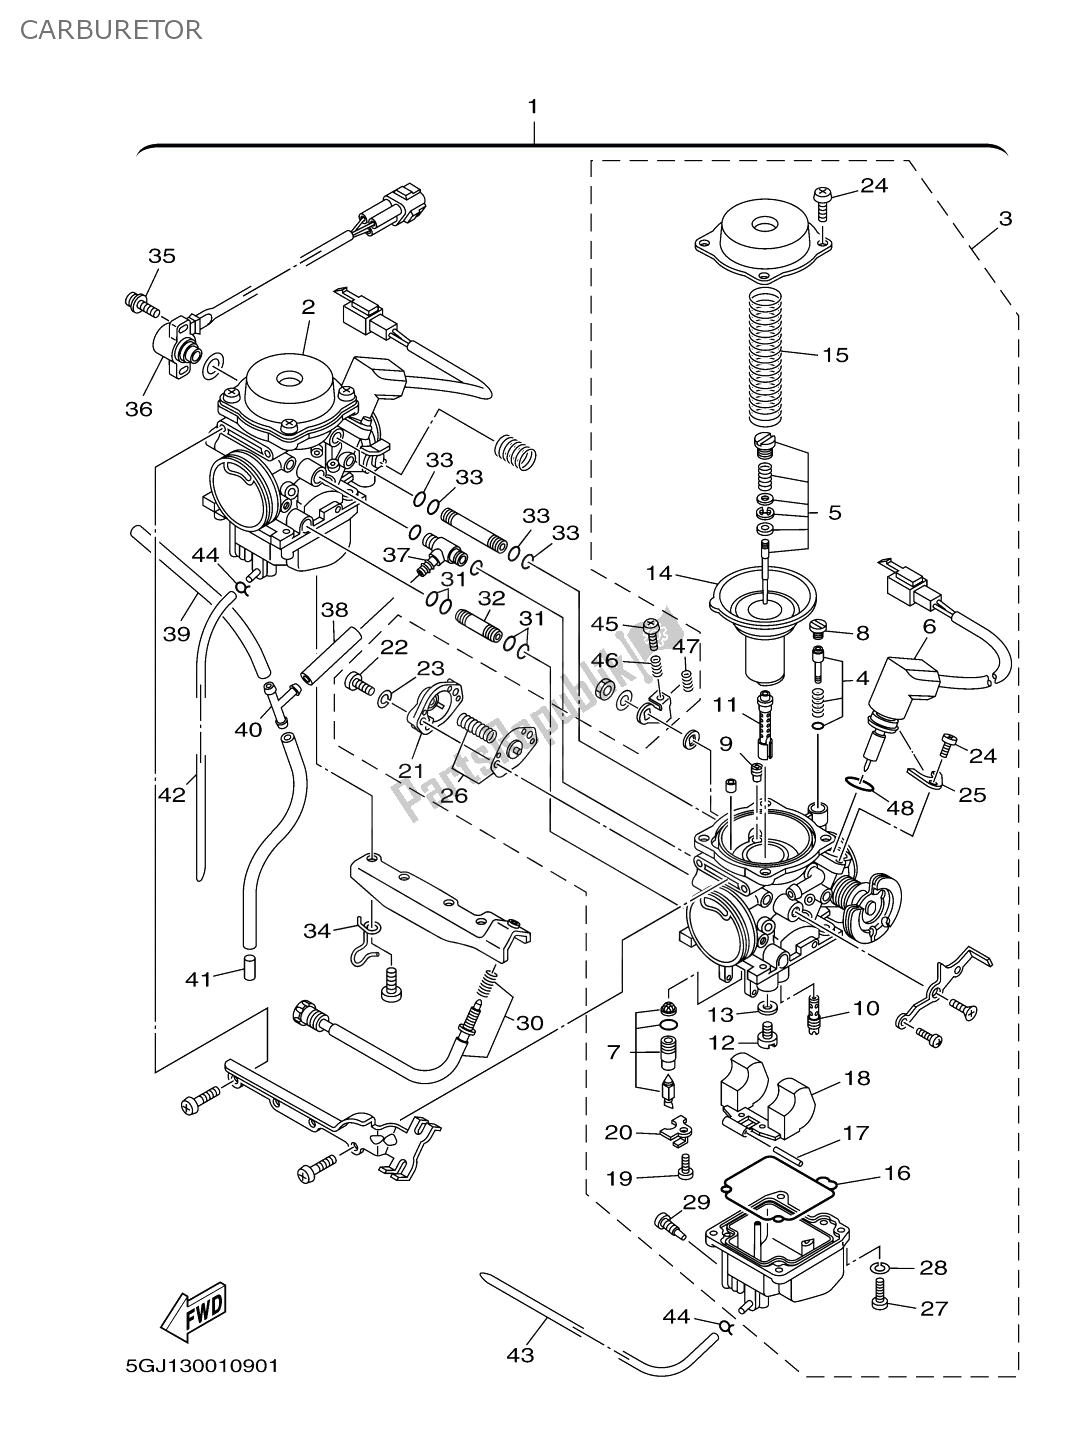 Todas las partes para Carburador de Yamaha T-max 500 2002